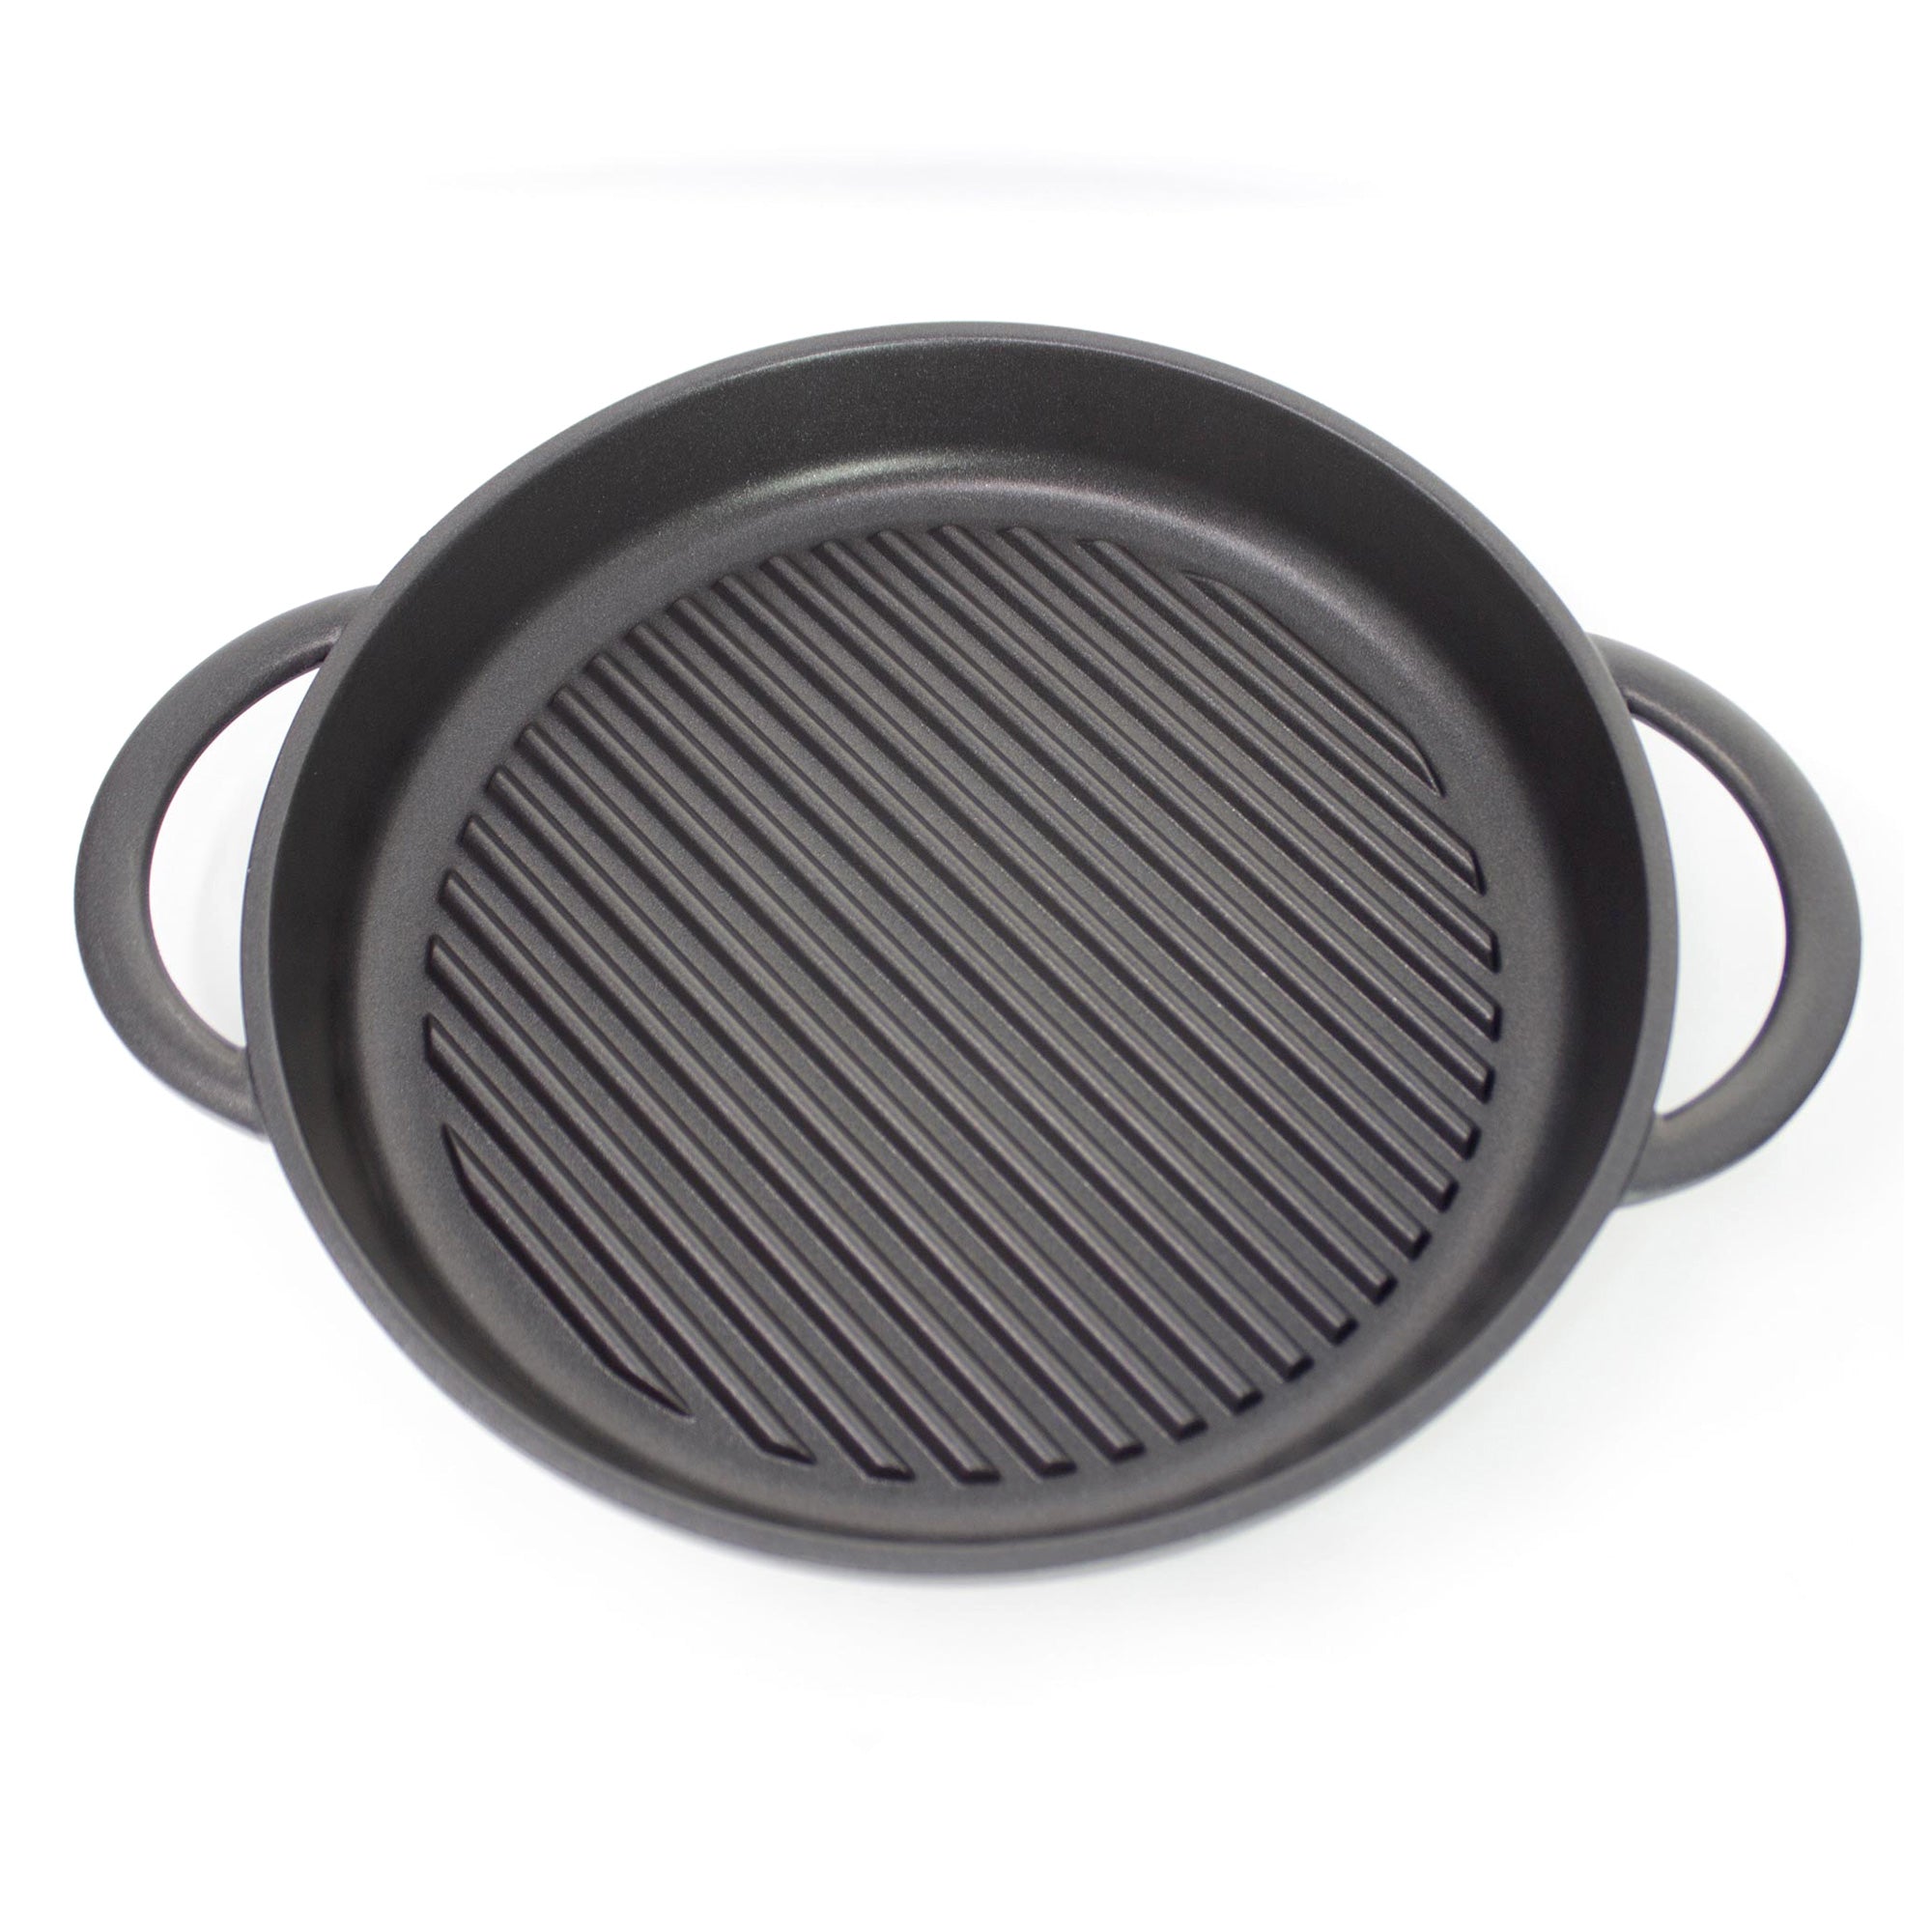 24cm Cast Aluminum Griddle Pan – R & B Import